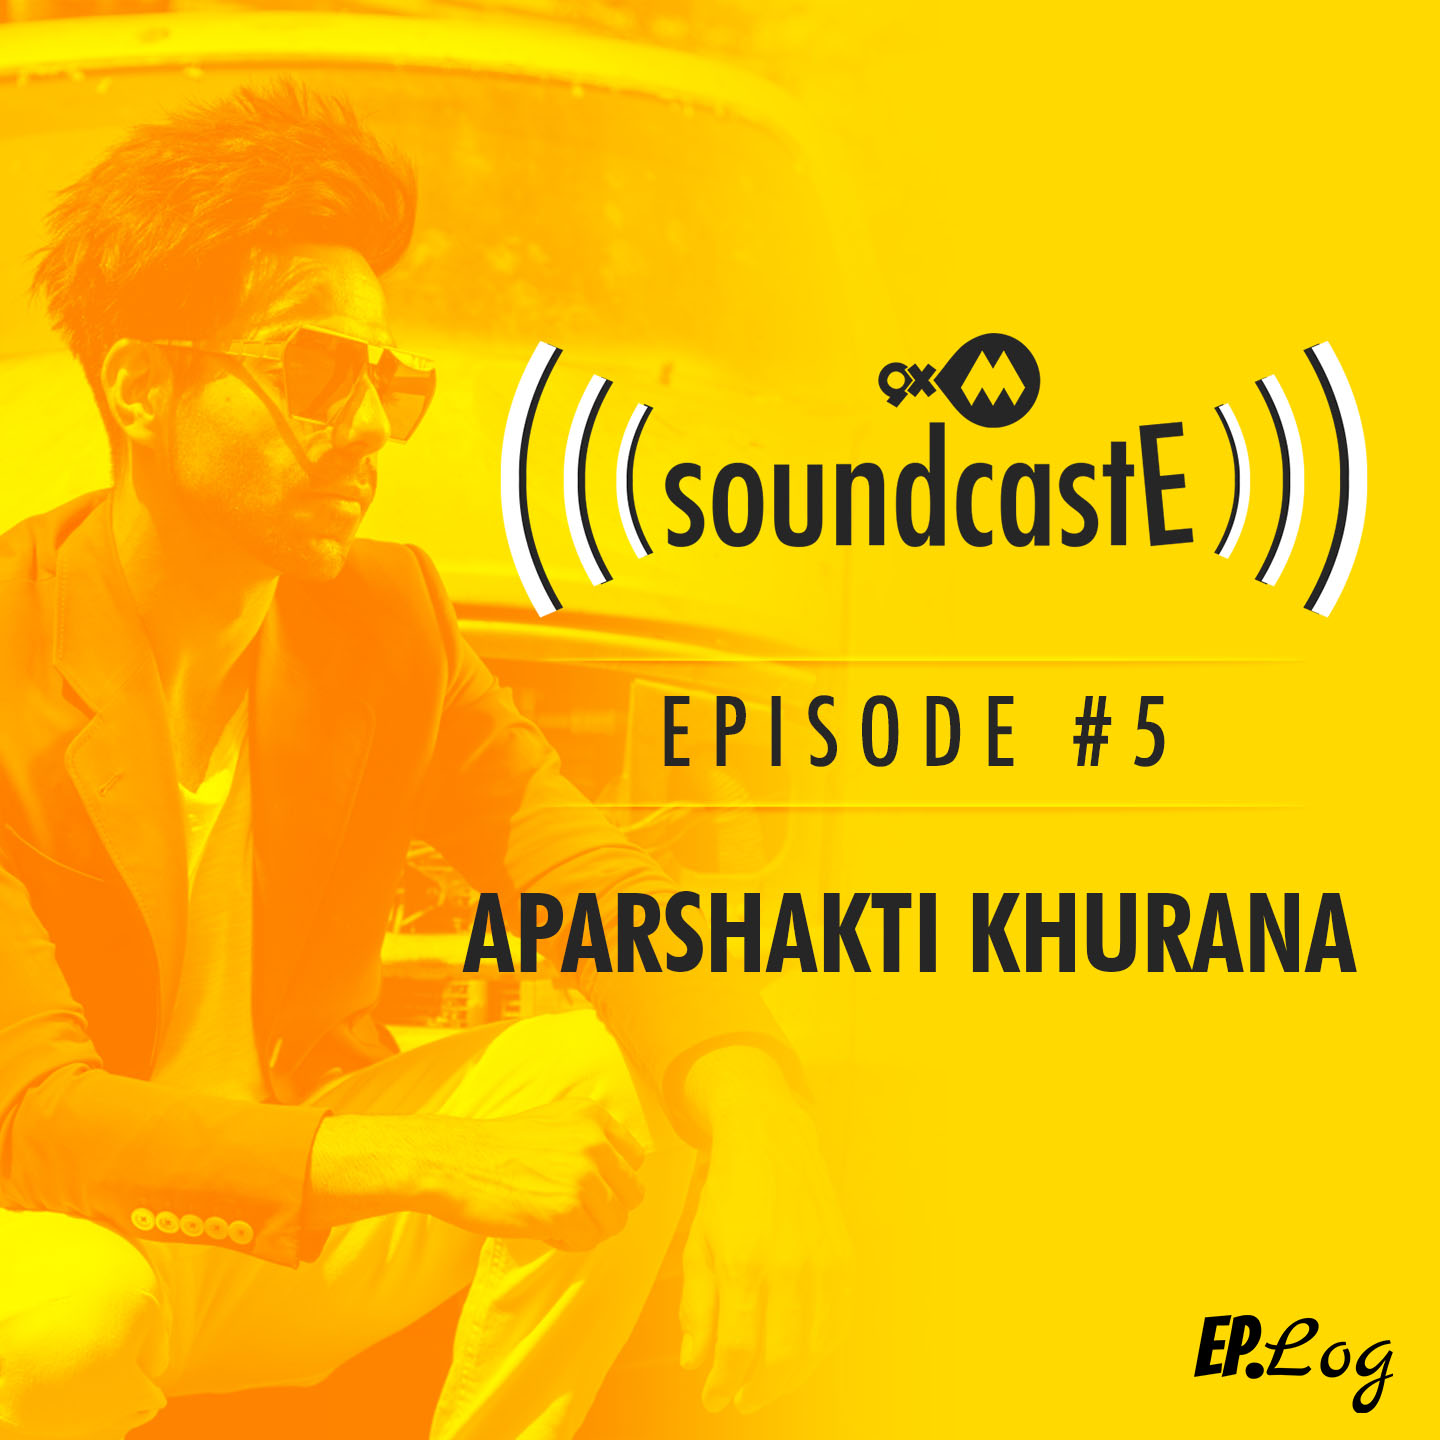 Ep. 05: 9XM SoundcastE with Aparshakti Khurana